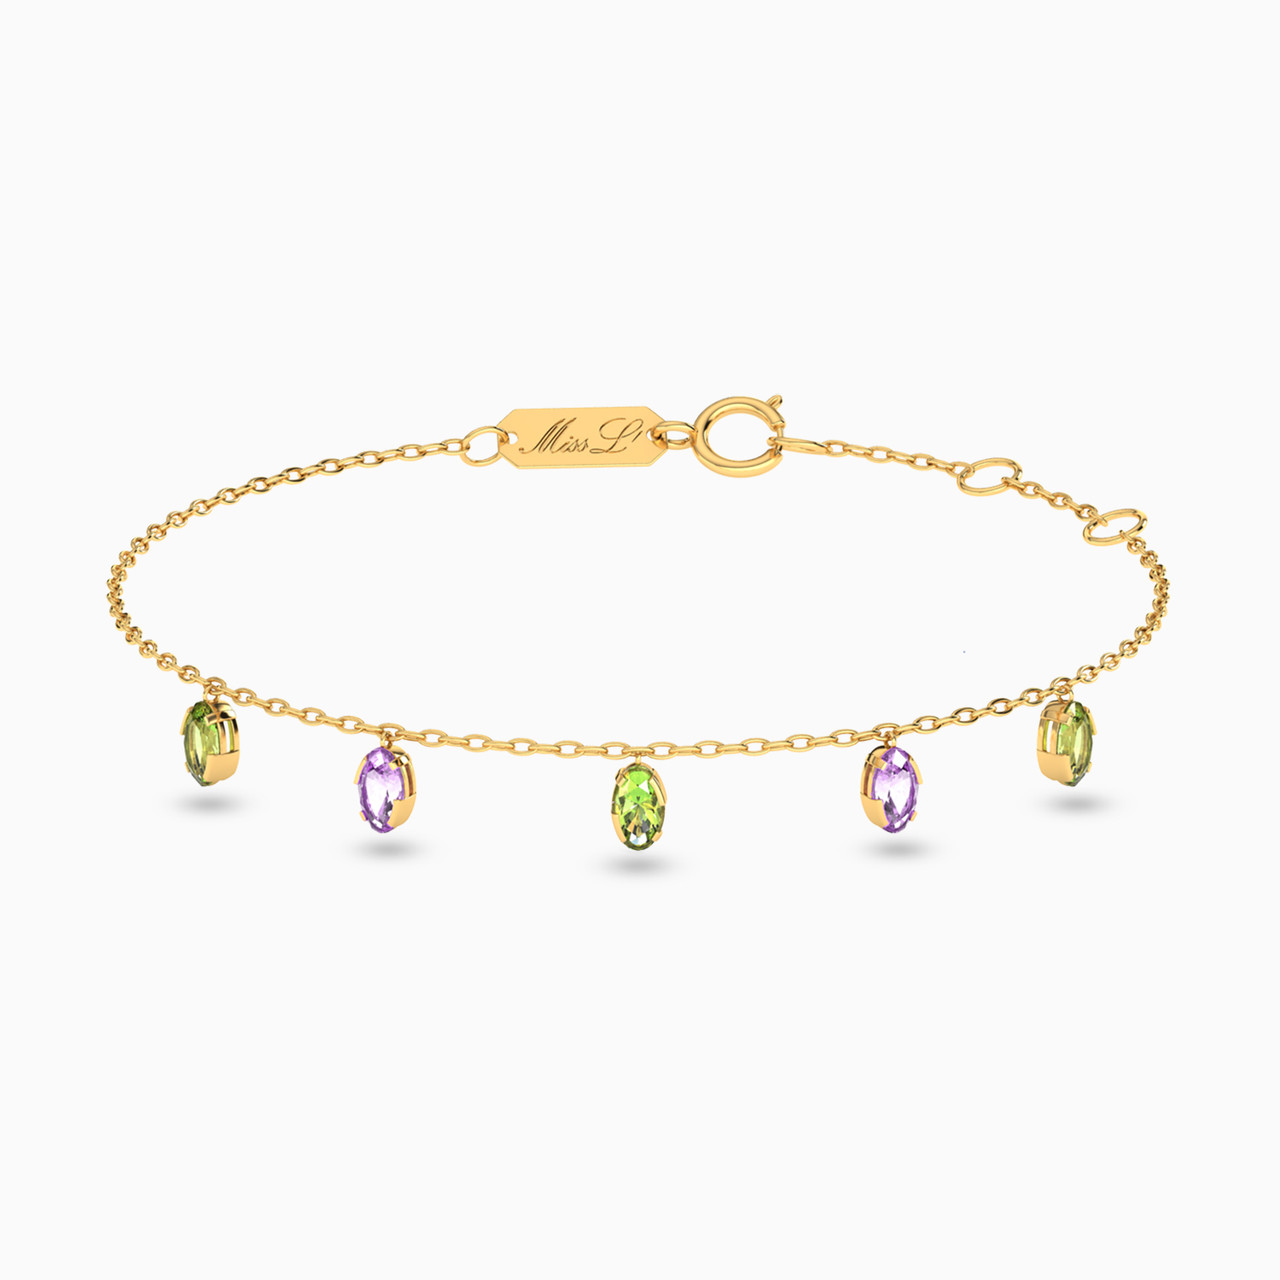 Shop All - Miss L' Jewelry | L'azurde KSA